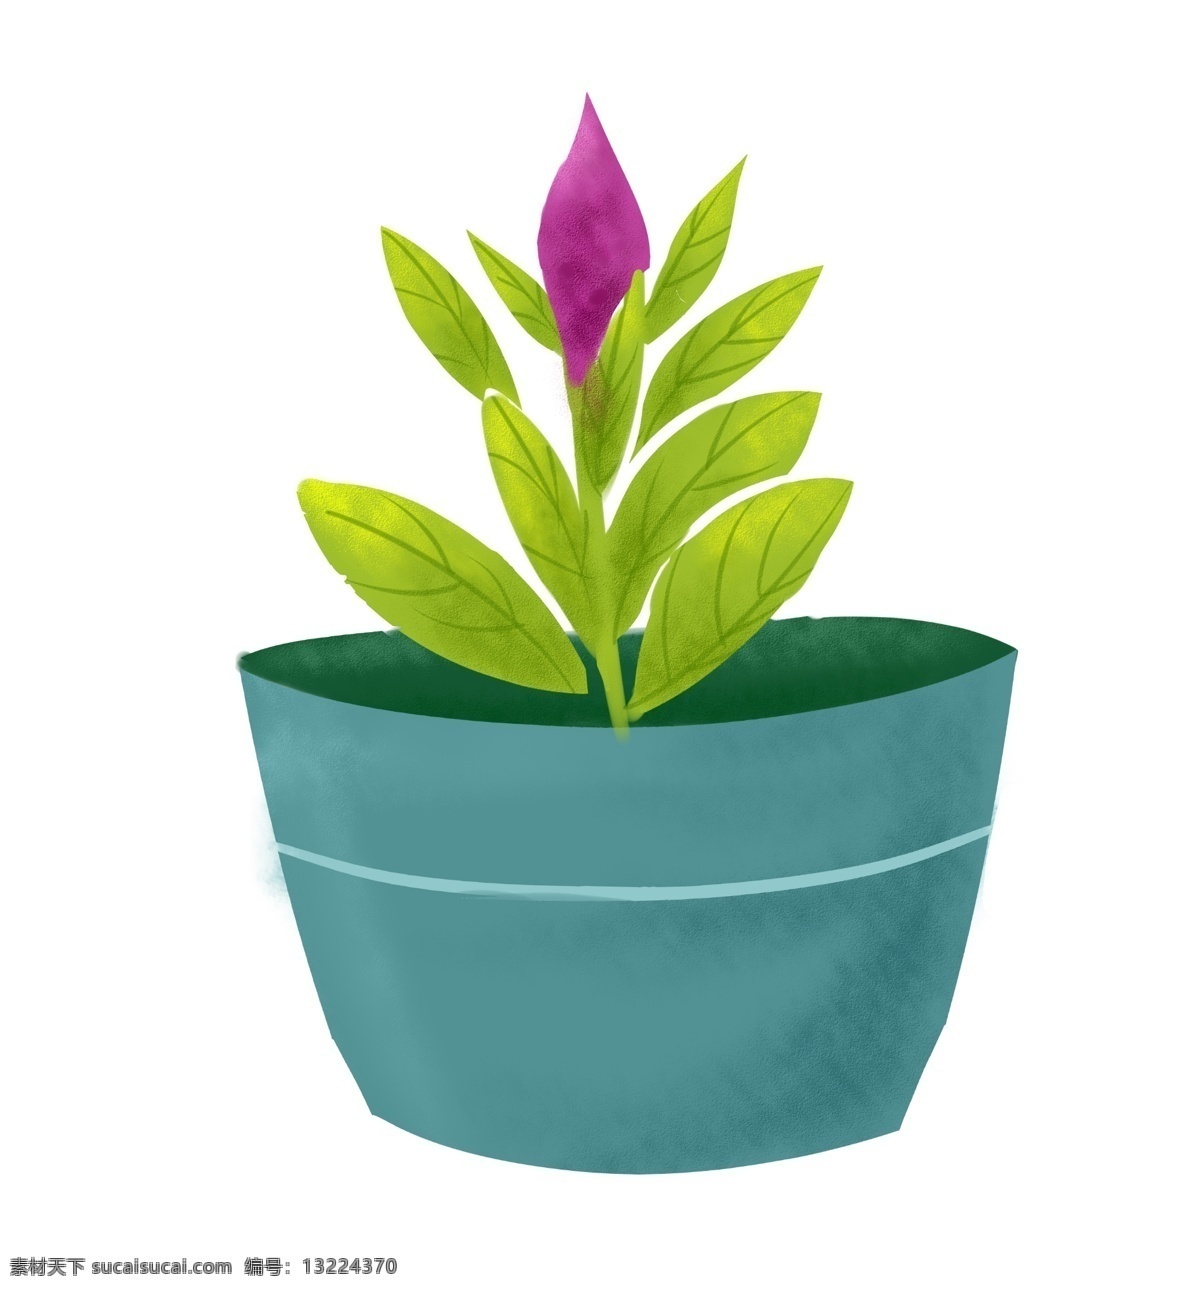 紫色 小花 盆栽 插画 紫色的小花 绿色的叶子 春季盆栽 立春盆栽 立体盆栽 漂亮的盆栽 盆栽装饰